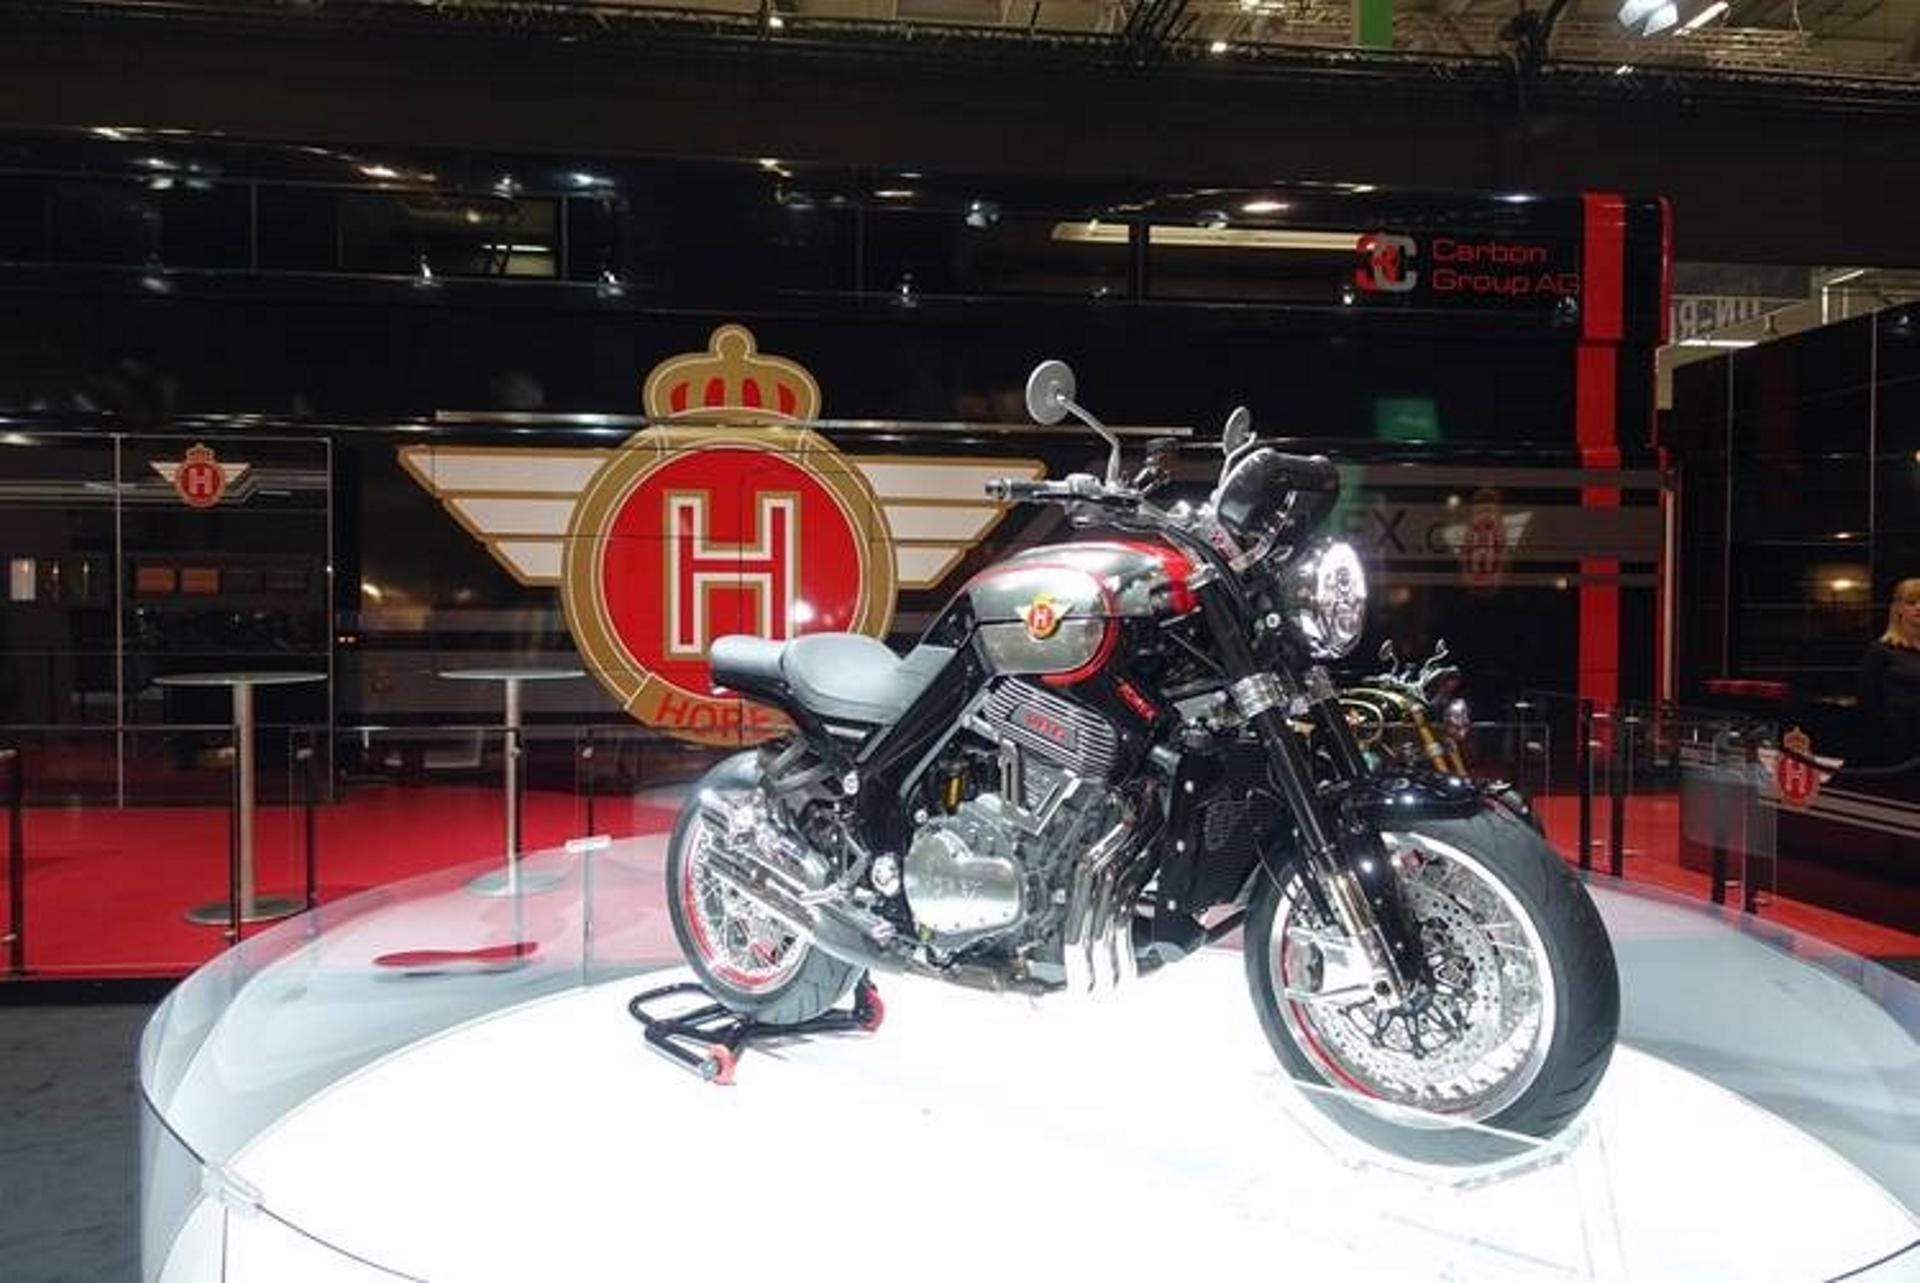 Horex VR6 Classic HL (ab 42.500 Euro) und Horex VR6 Cafe Racer HL (ab 46.500 Euro) heißen die beiden Neuheiten; HL steht für Heritage Line.